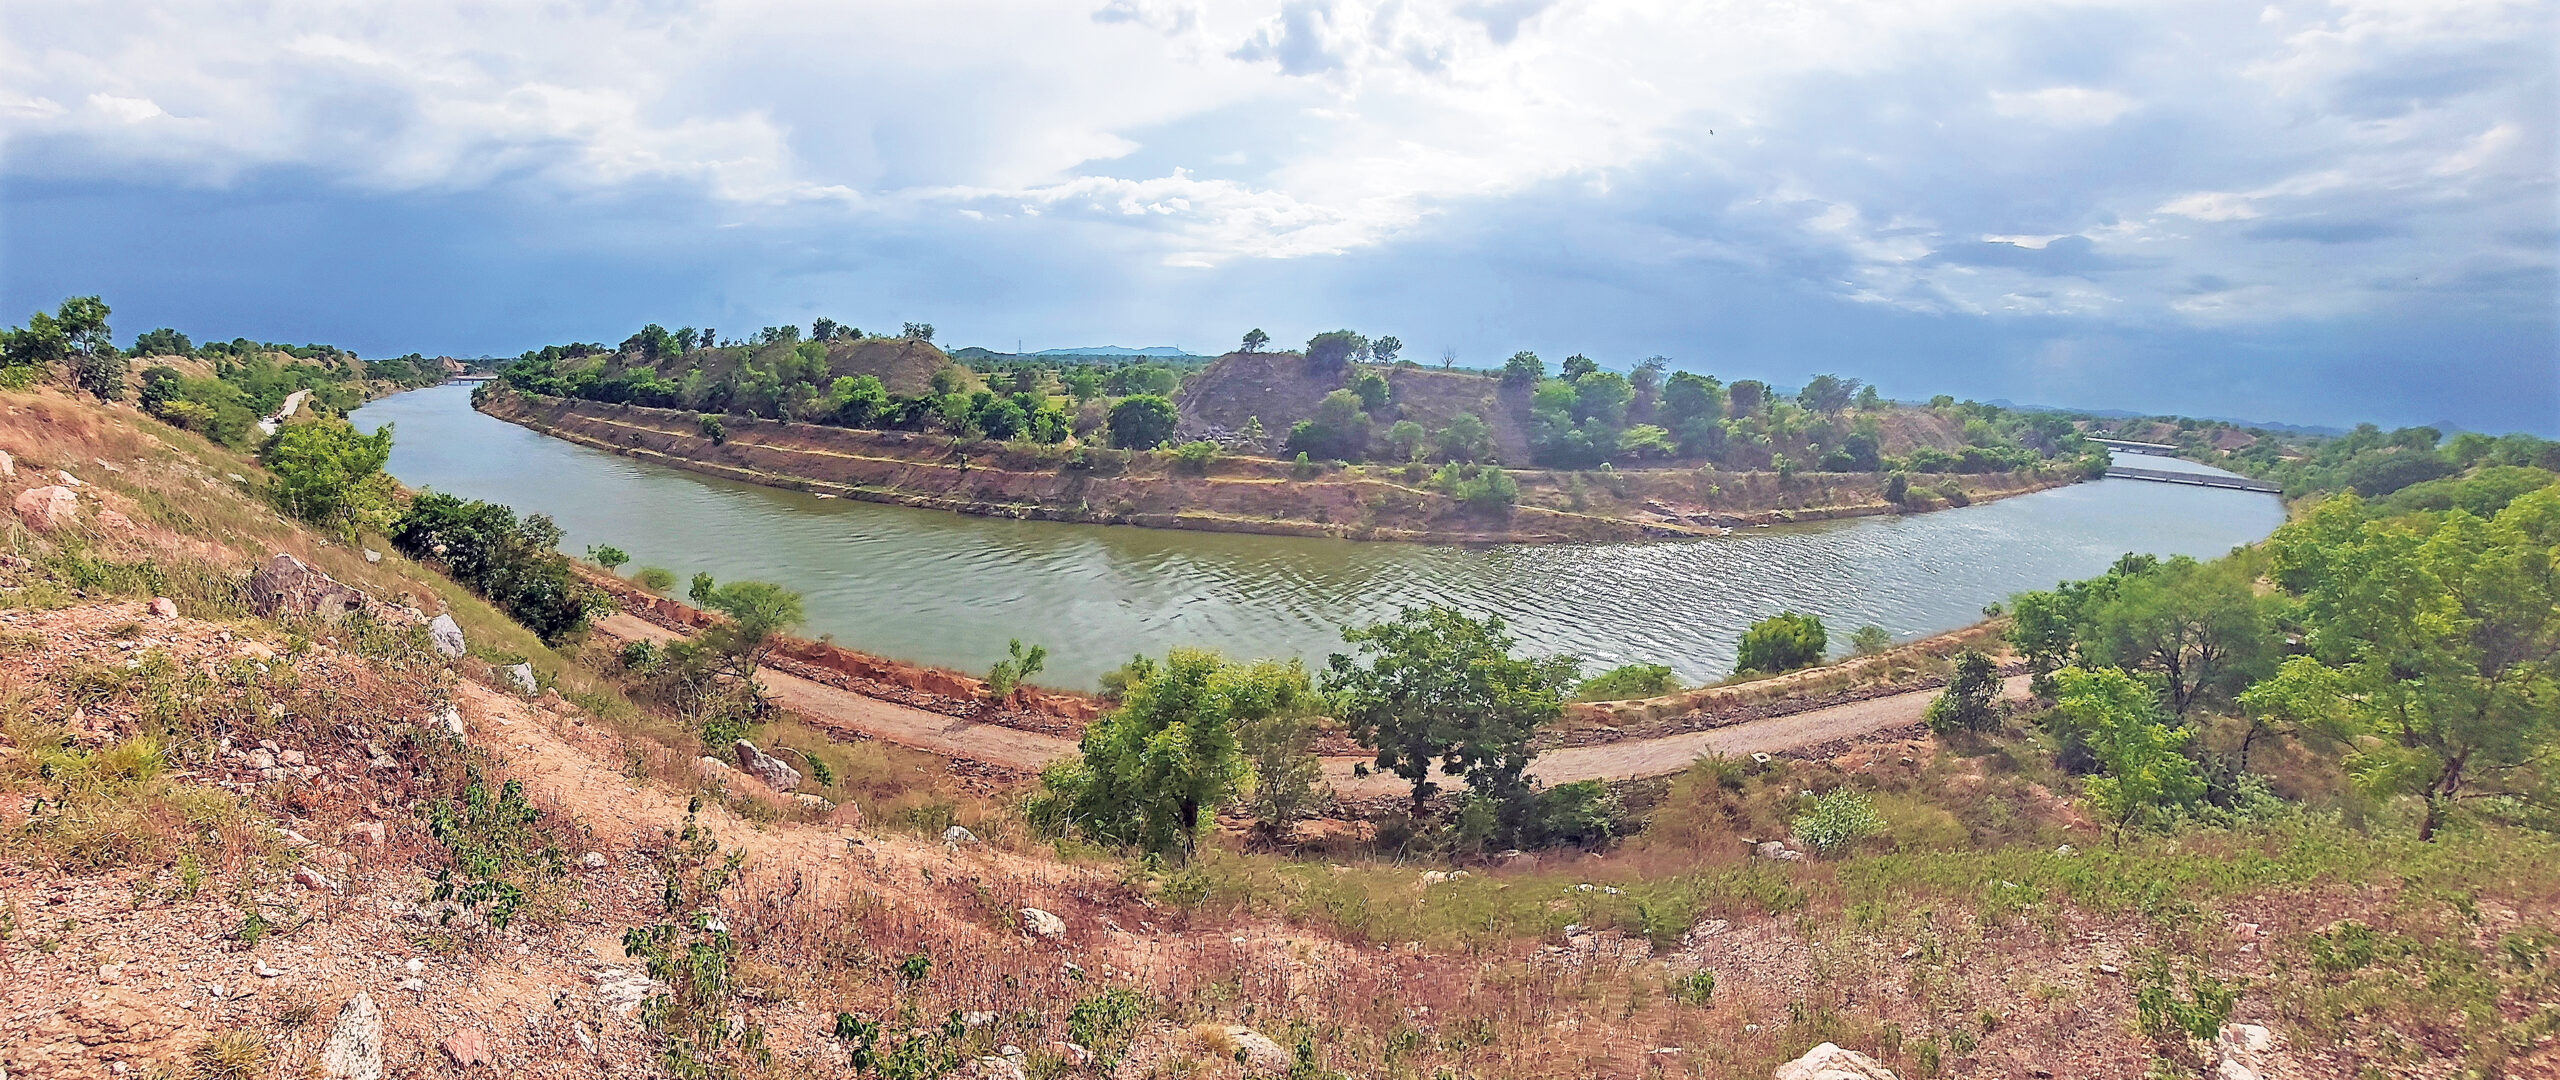 ఎస్సారెస్పీ చివరి ఆయకట్టు వరకు వానకాలం పంటకు సాగునీరు ఇవ్వడమే లక్ష్యంగా కాళేశ్వరం ఎత్తిపోతల (Kaleshwaram Lift Irrigation Project)ను అధికారులు నడిపిస్తున్నారు. 